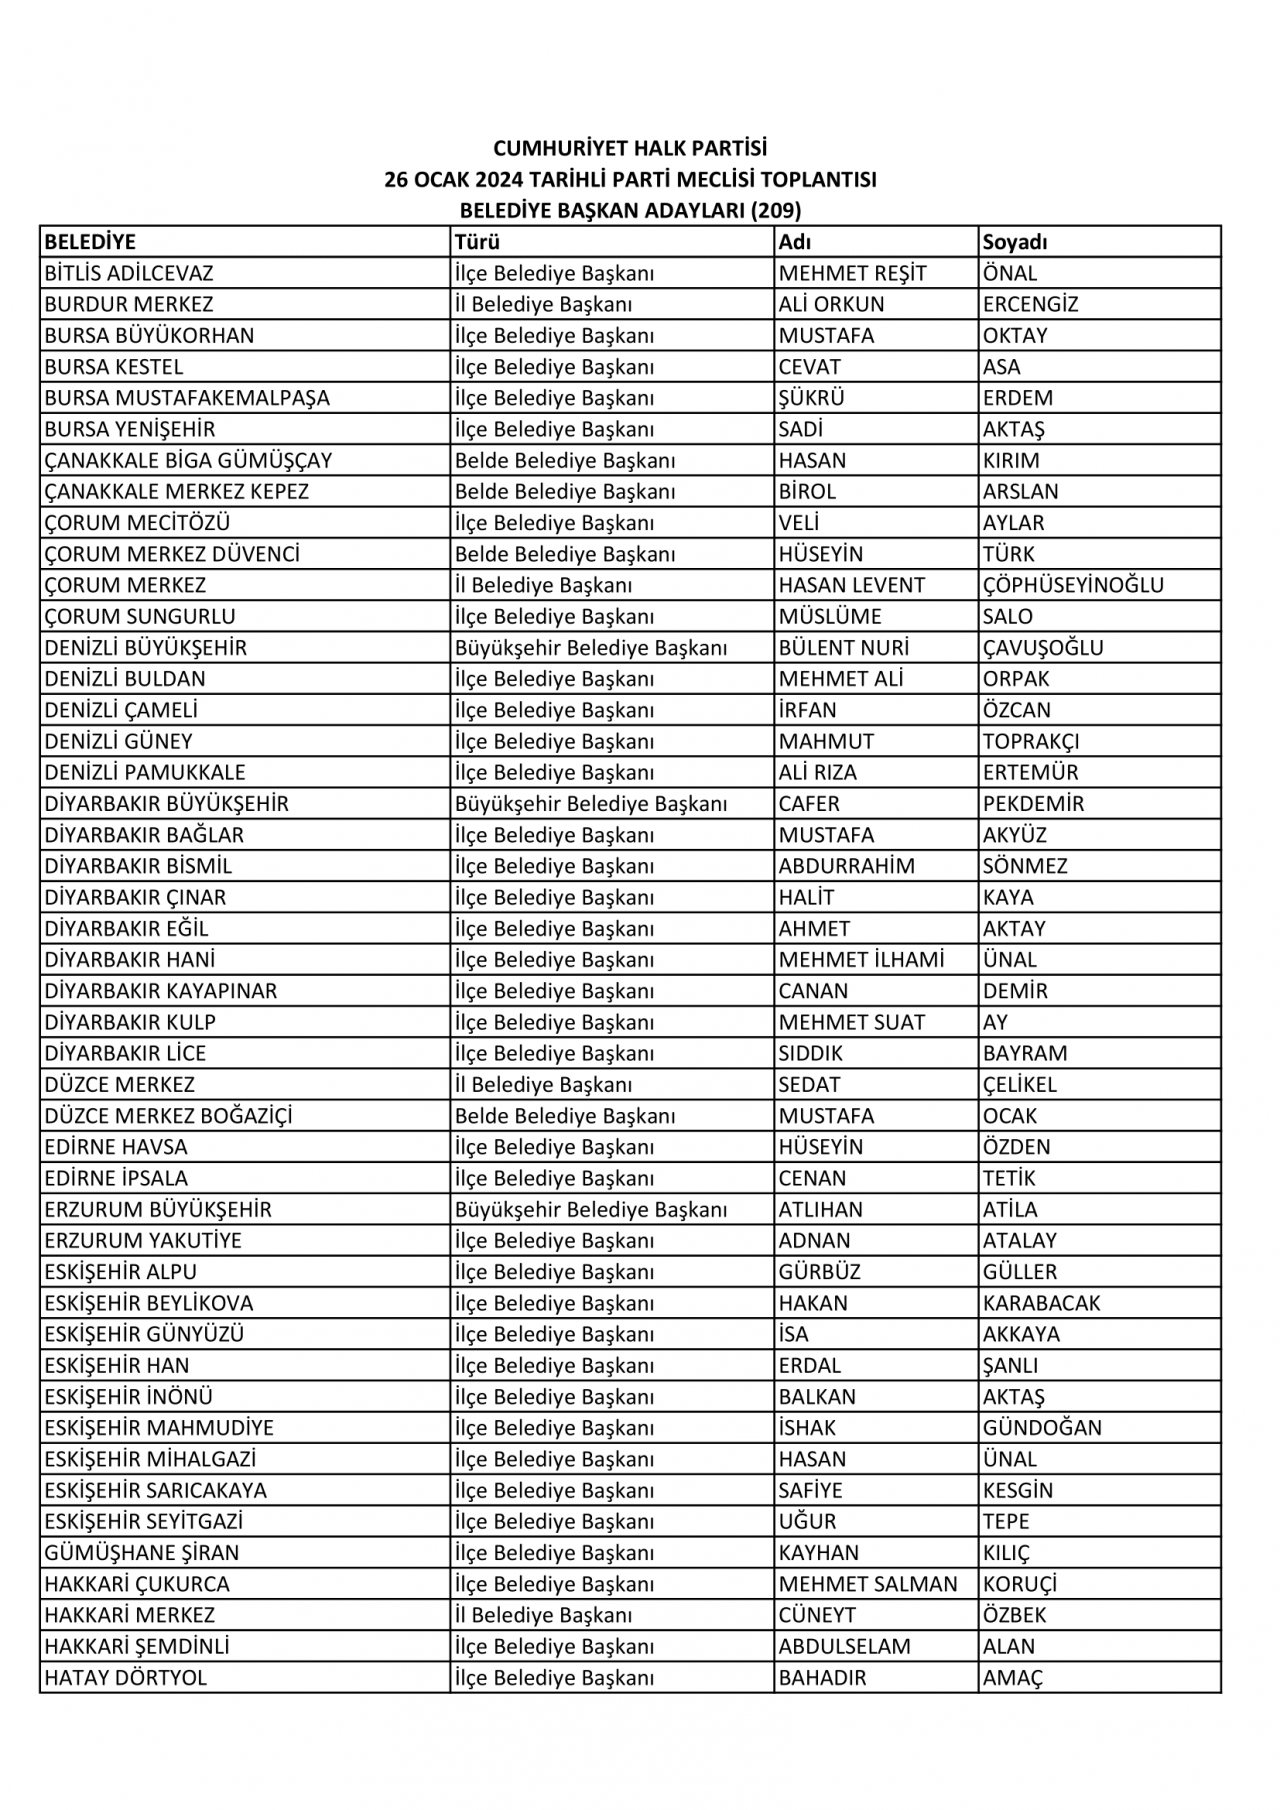 CHP PM'den geçen belediye başkan adayları isimleri